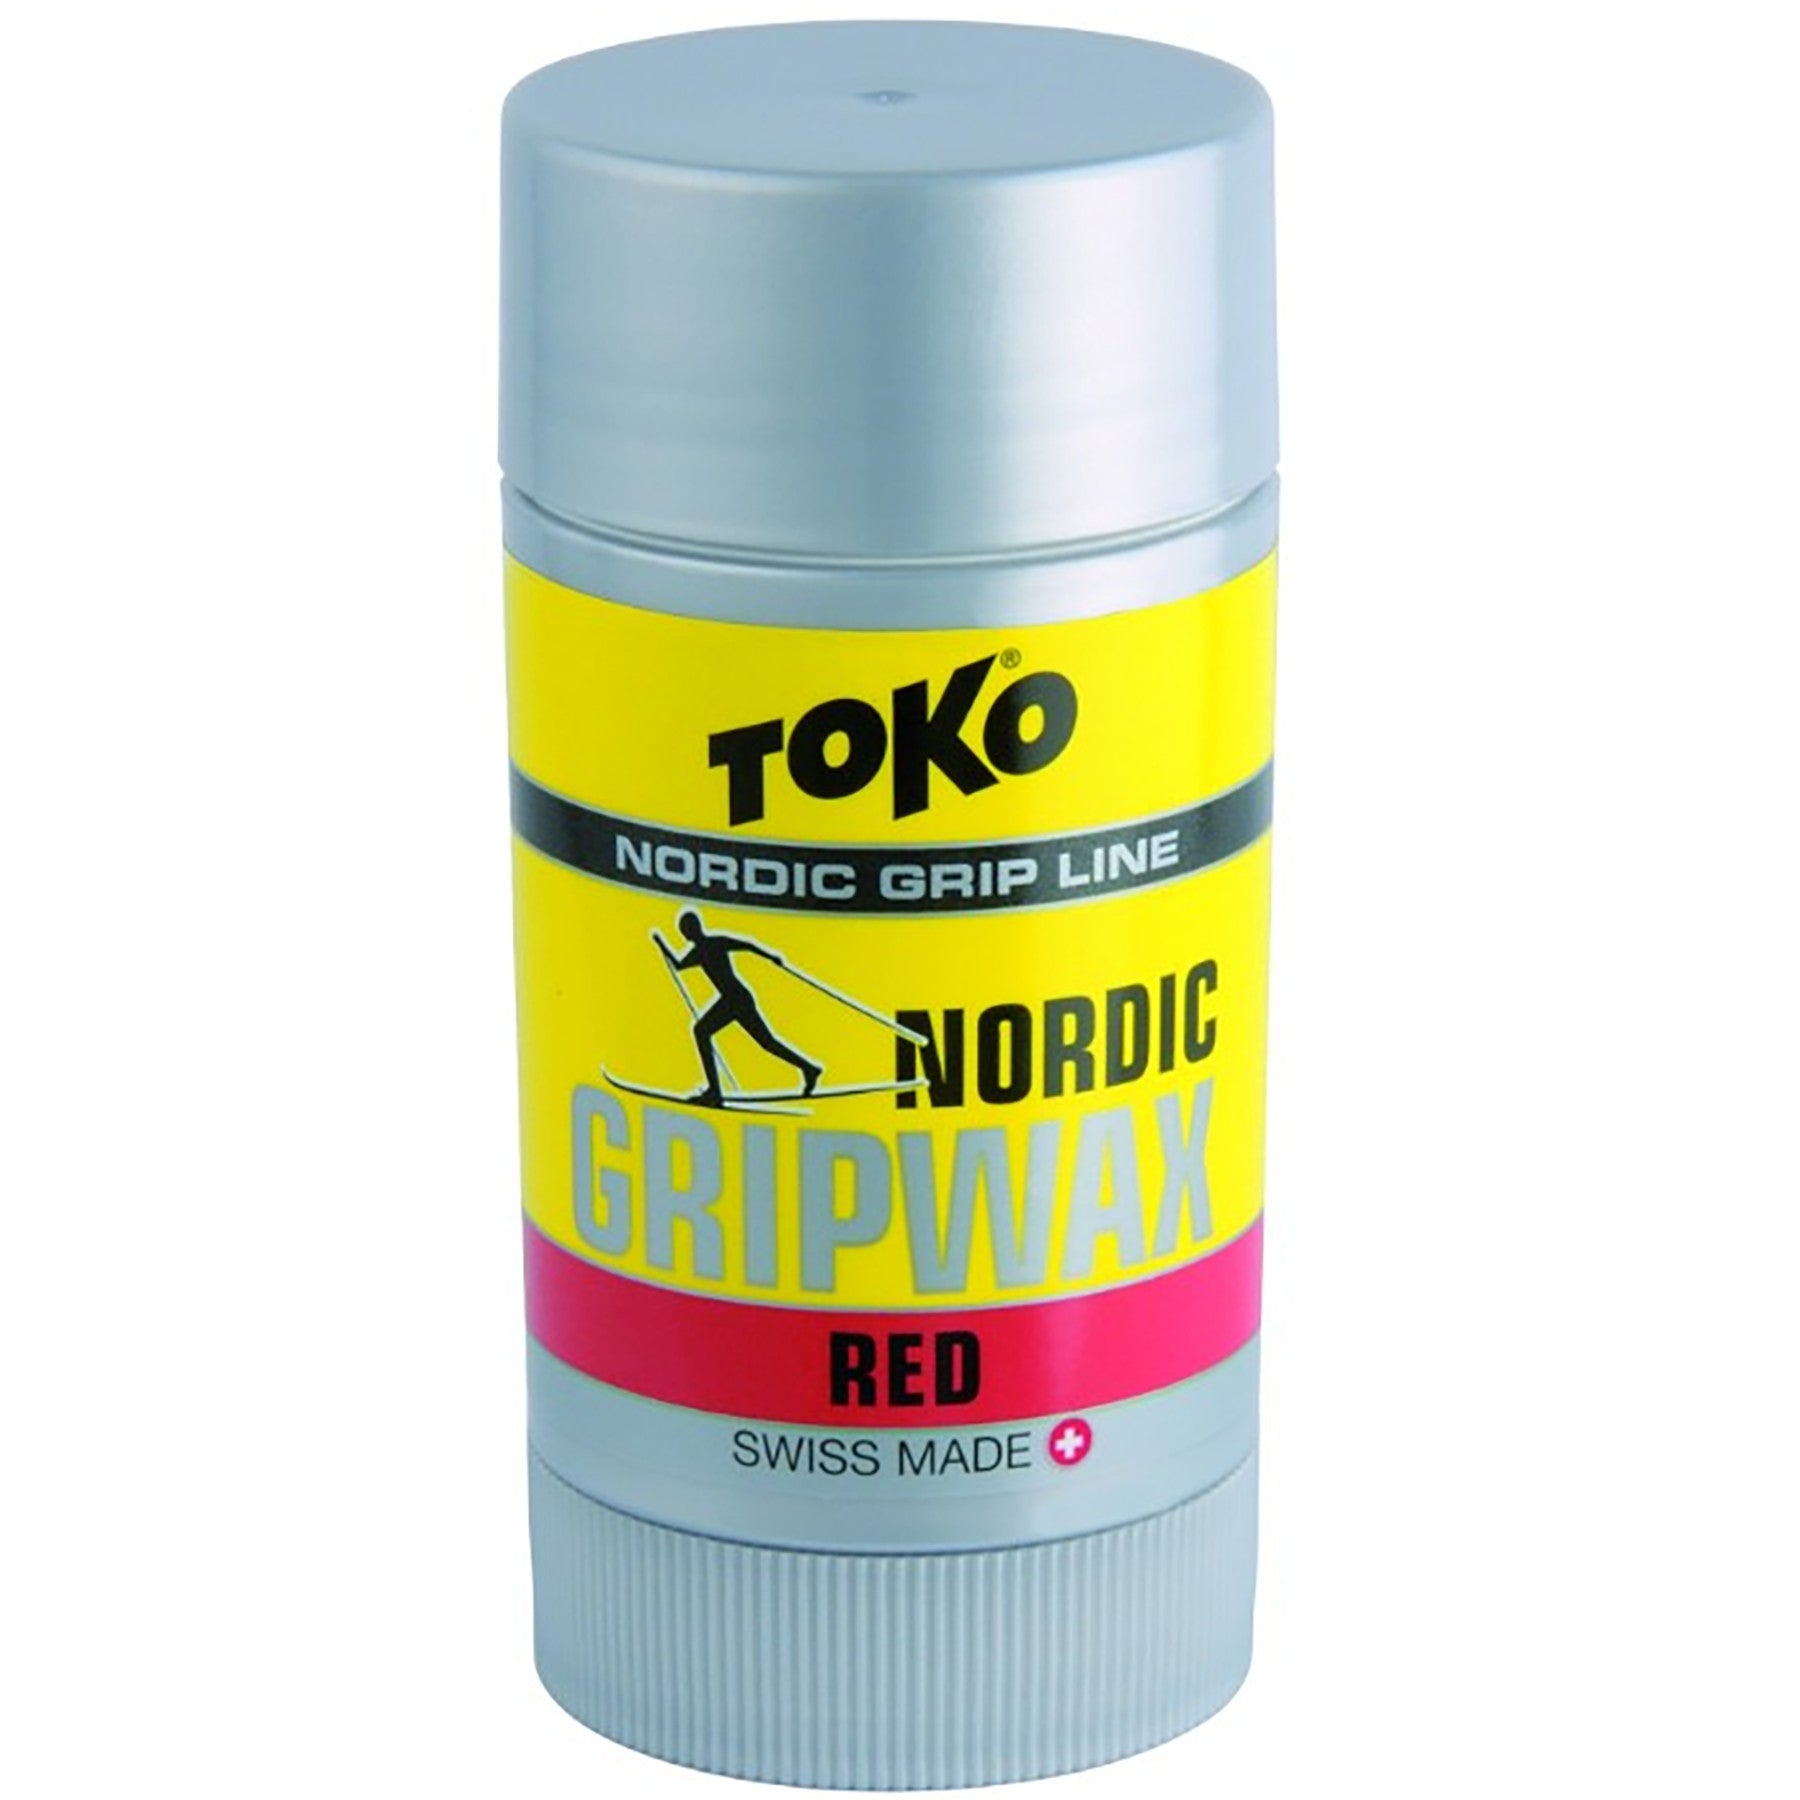 Buy red Toko Nordic GripWax